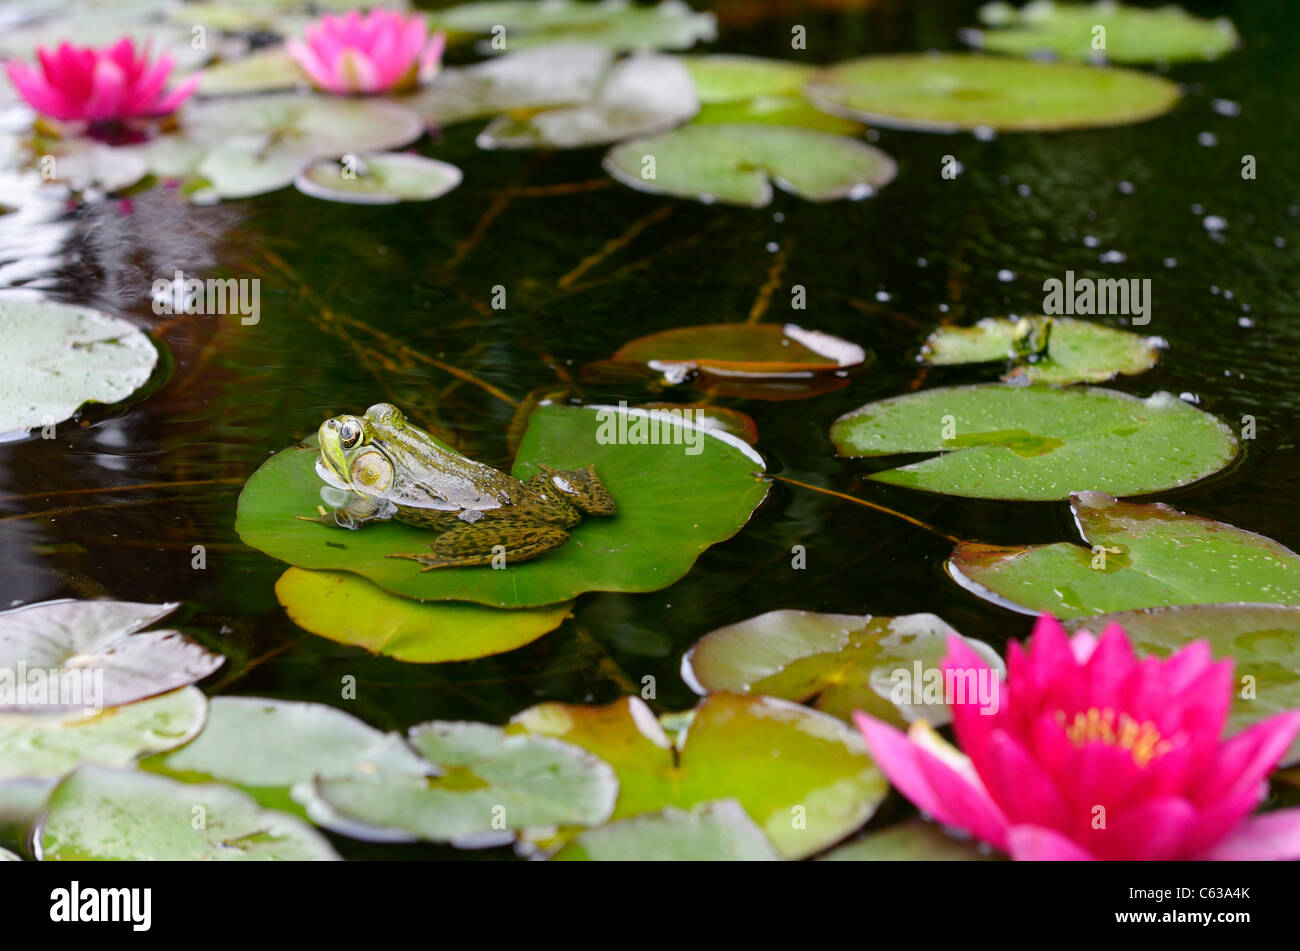 Green frog schwimmend auf einer Seerose pad Blatt in einem Teich mit rosa Blumen Stockfoto